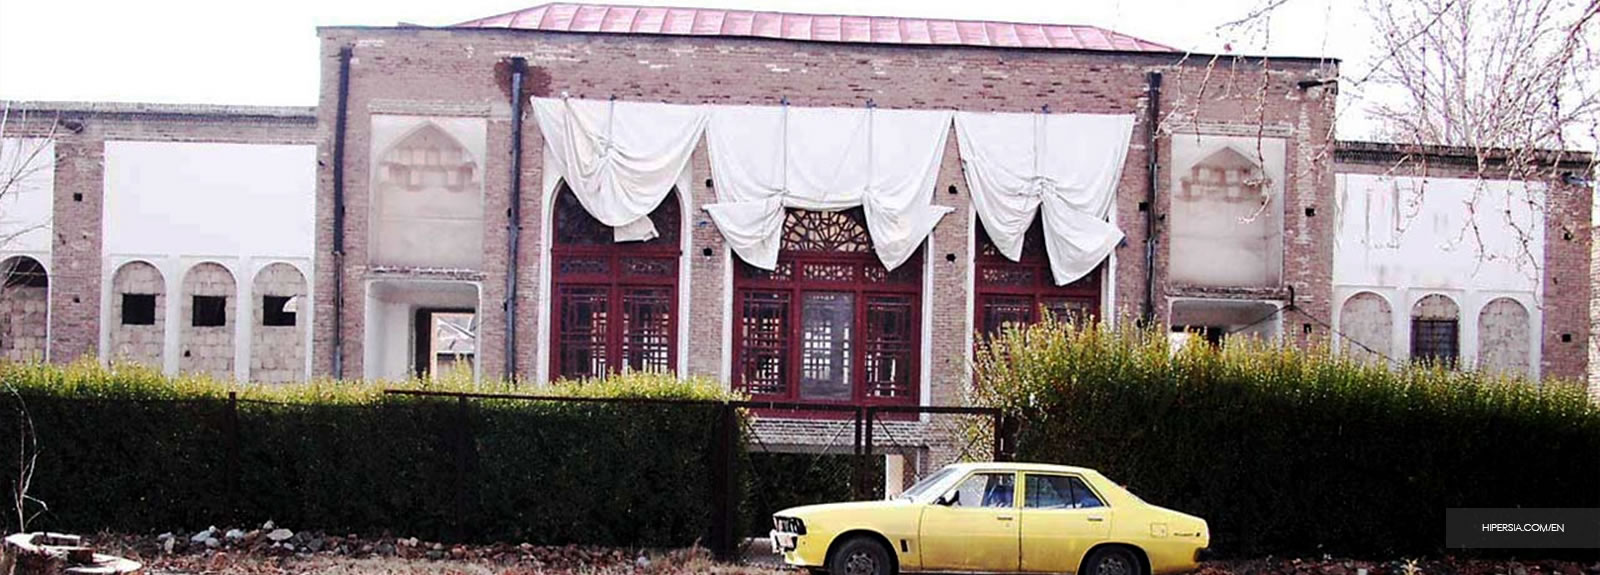 Soleimaniyeh Palace, Forgotten palace